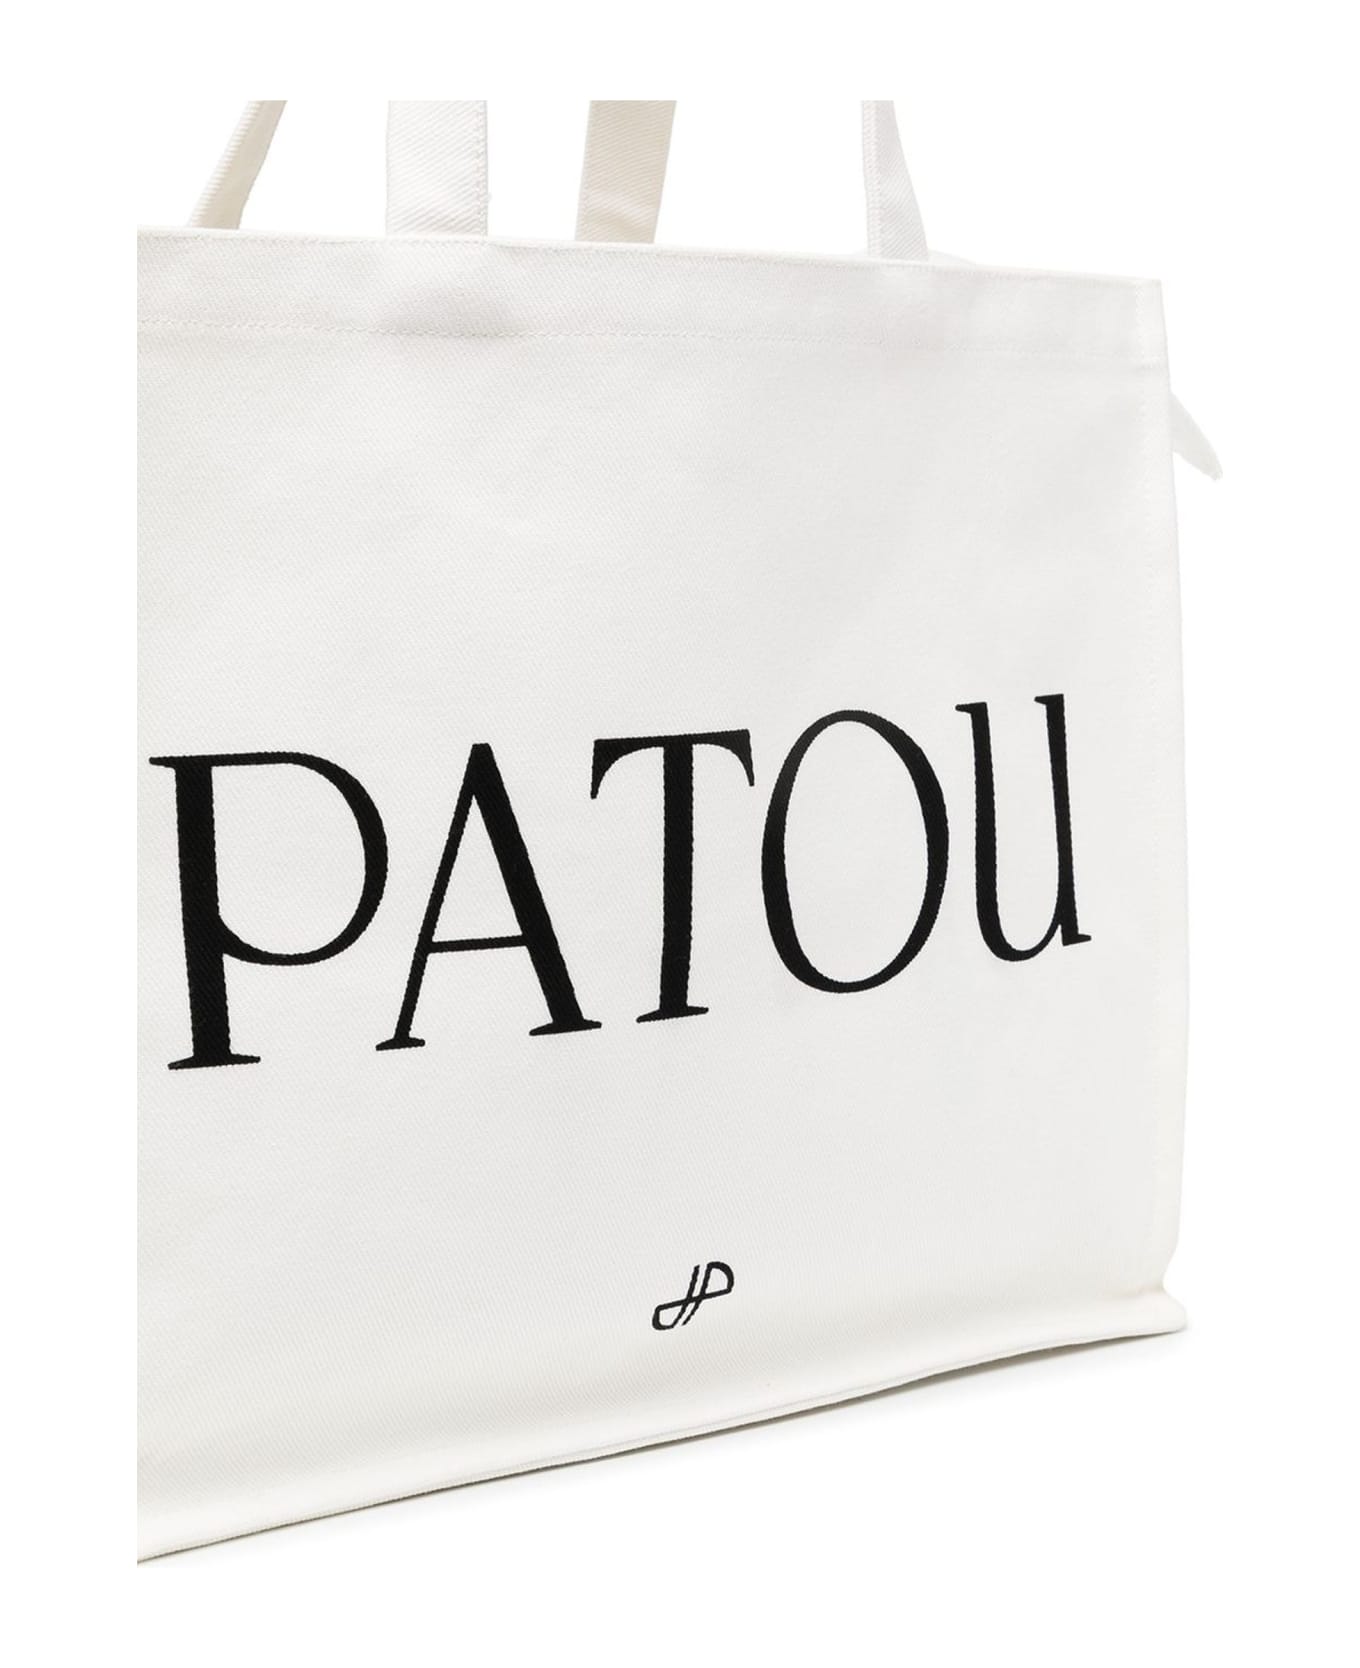 Patou White Cotton Tote Bag - White